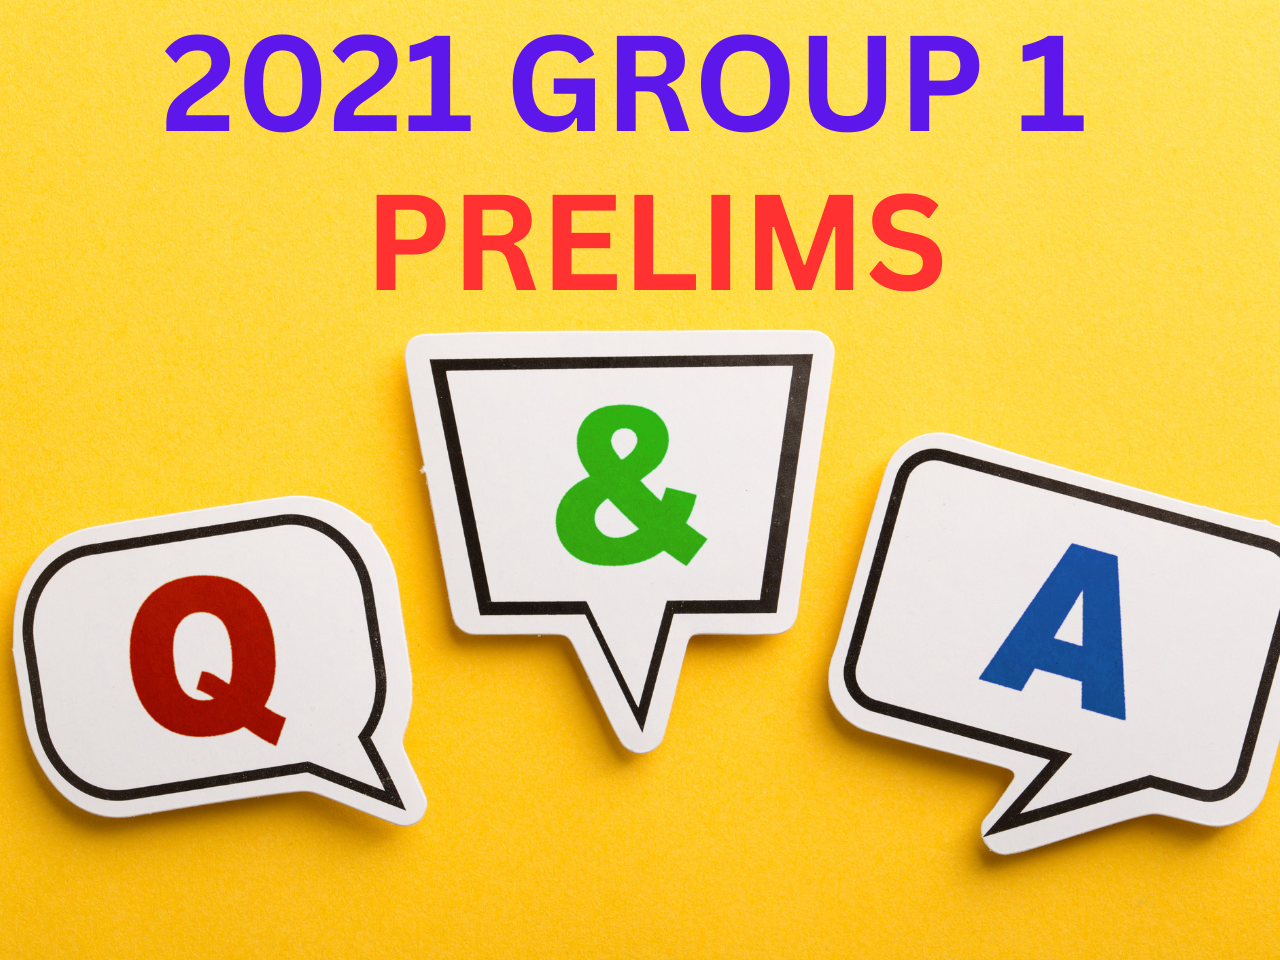 2021 GROUP 1 PRELIMS